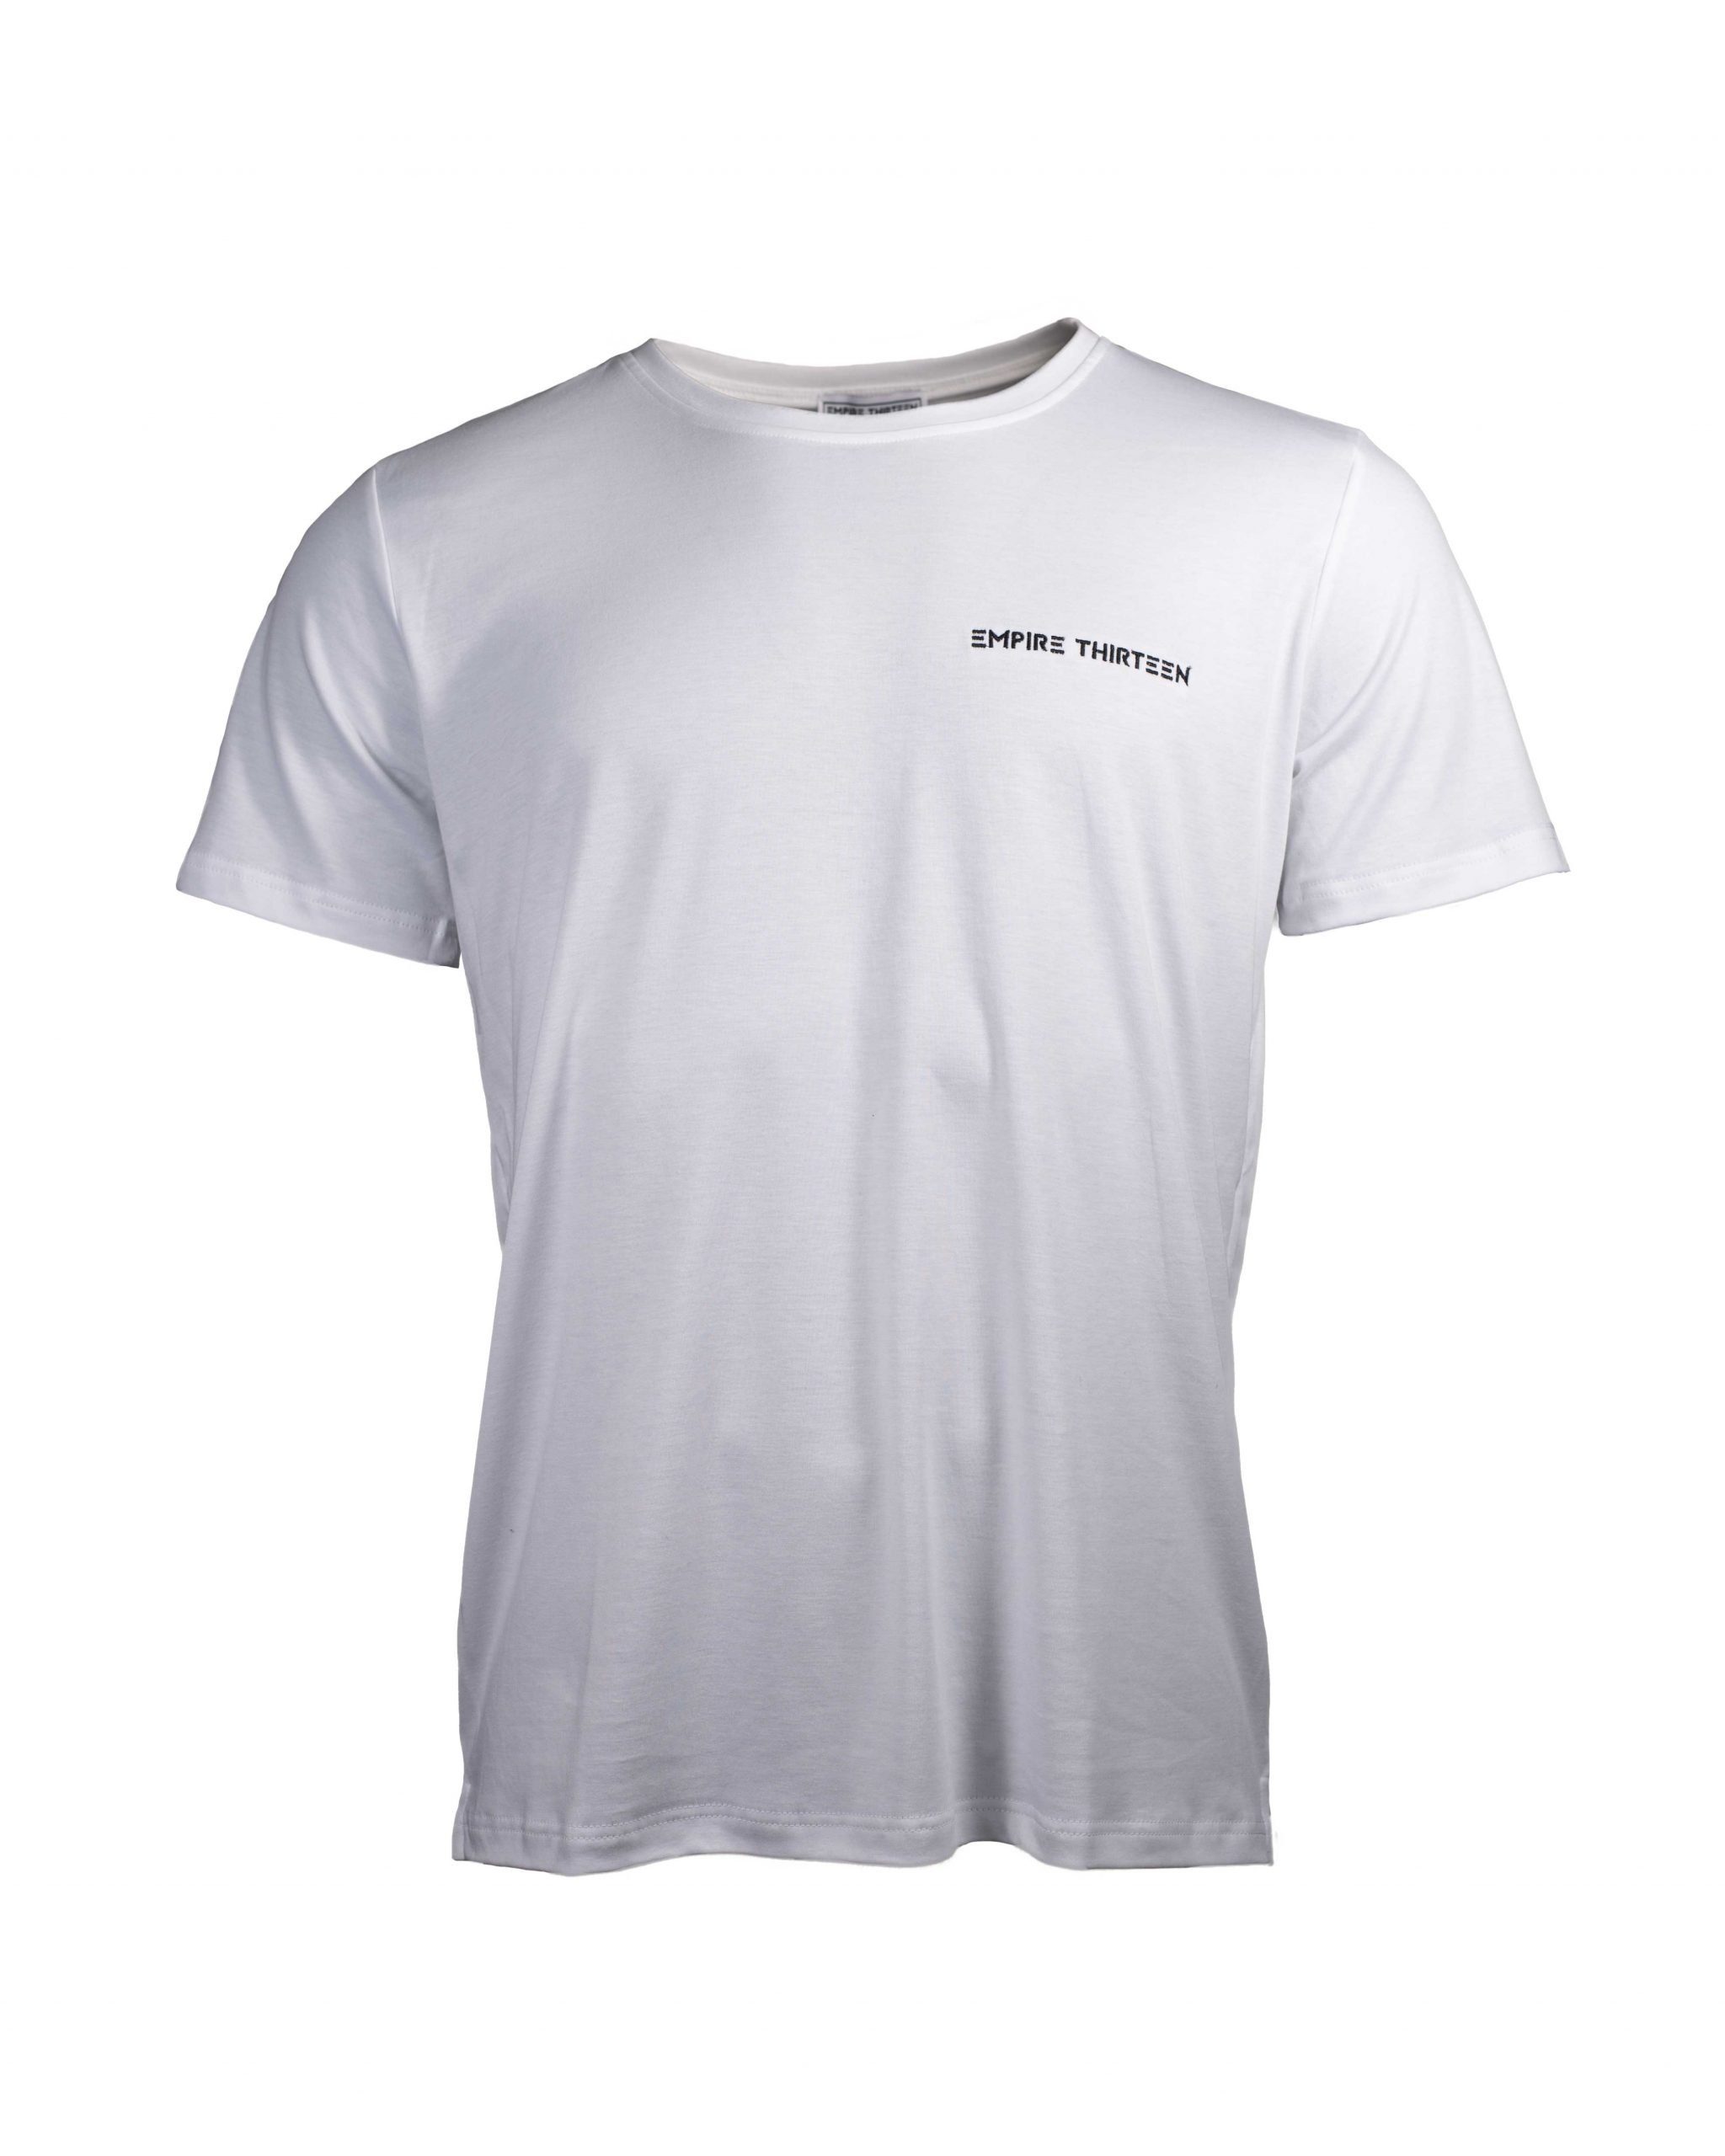 Weiß BASIC SHIRT EMPIRE-THIRTEEN "EMPIRE-THIRTEEN" MEN T-Shirt Stickerei